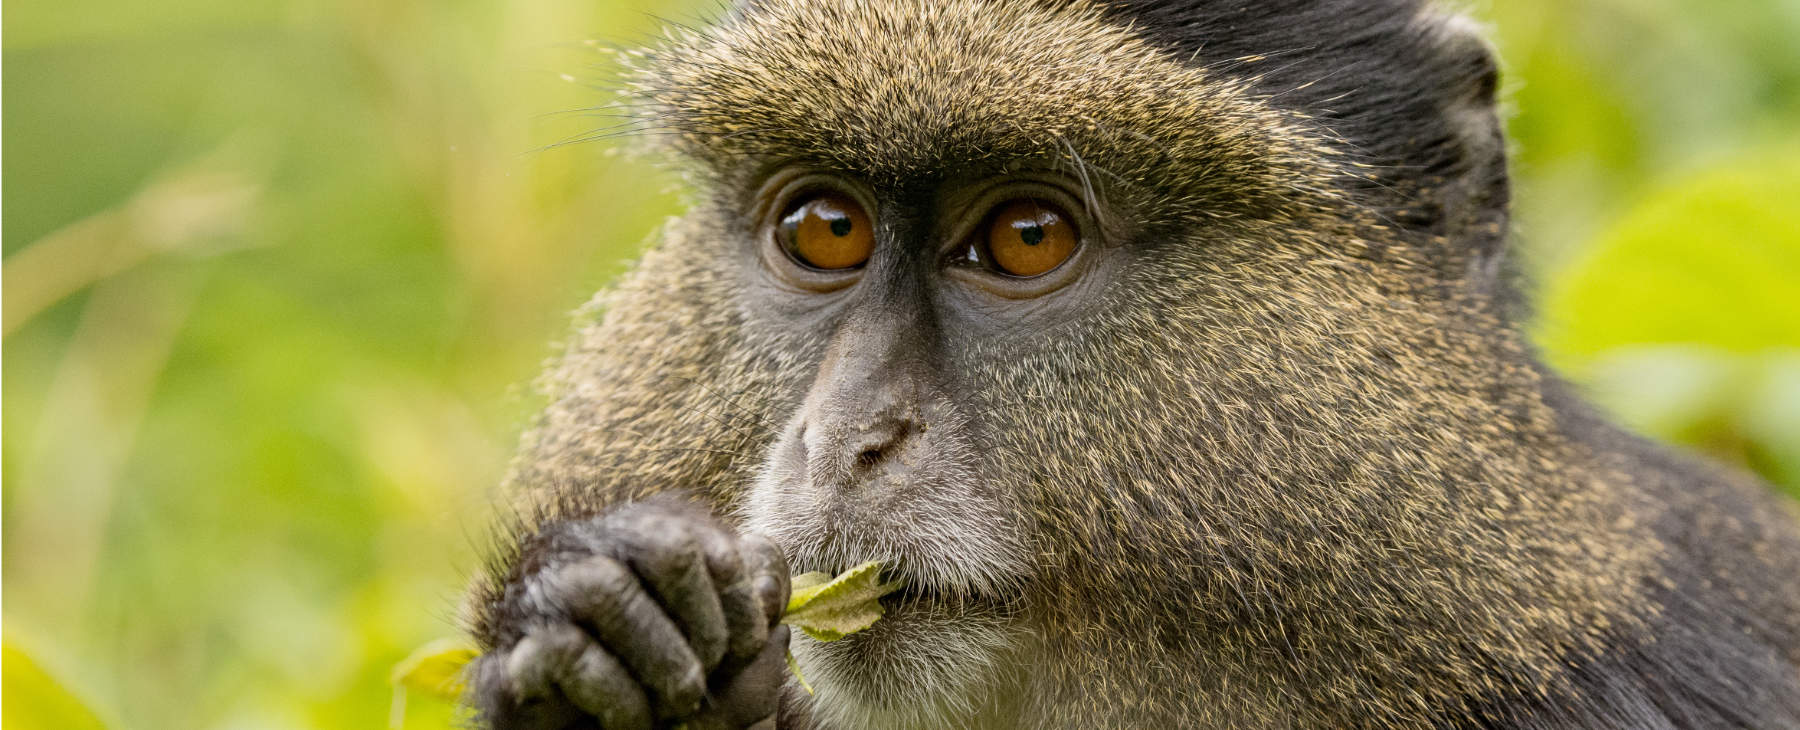 Luxusurlaub Gorillas Ruanda